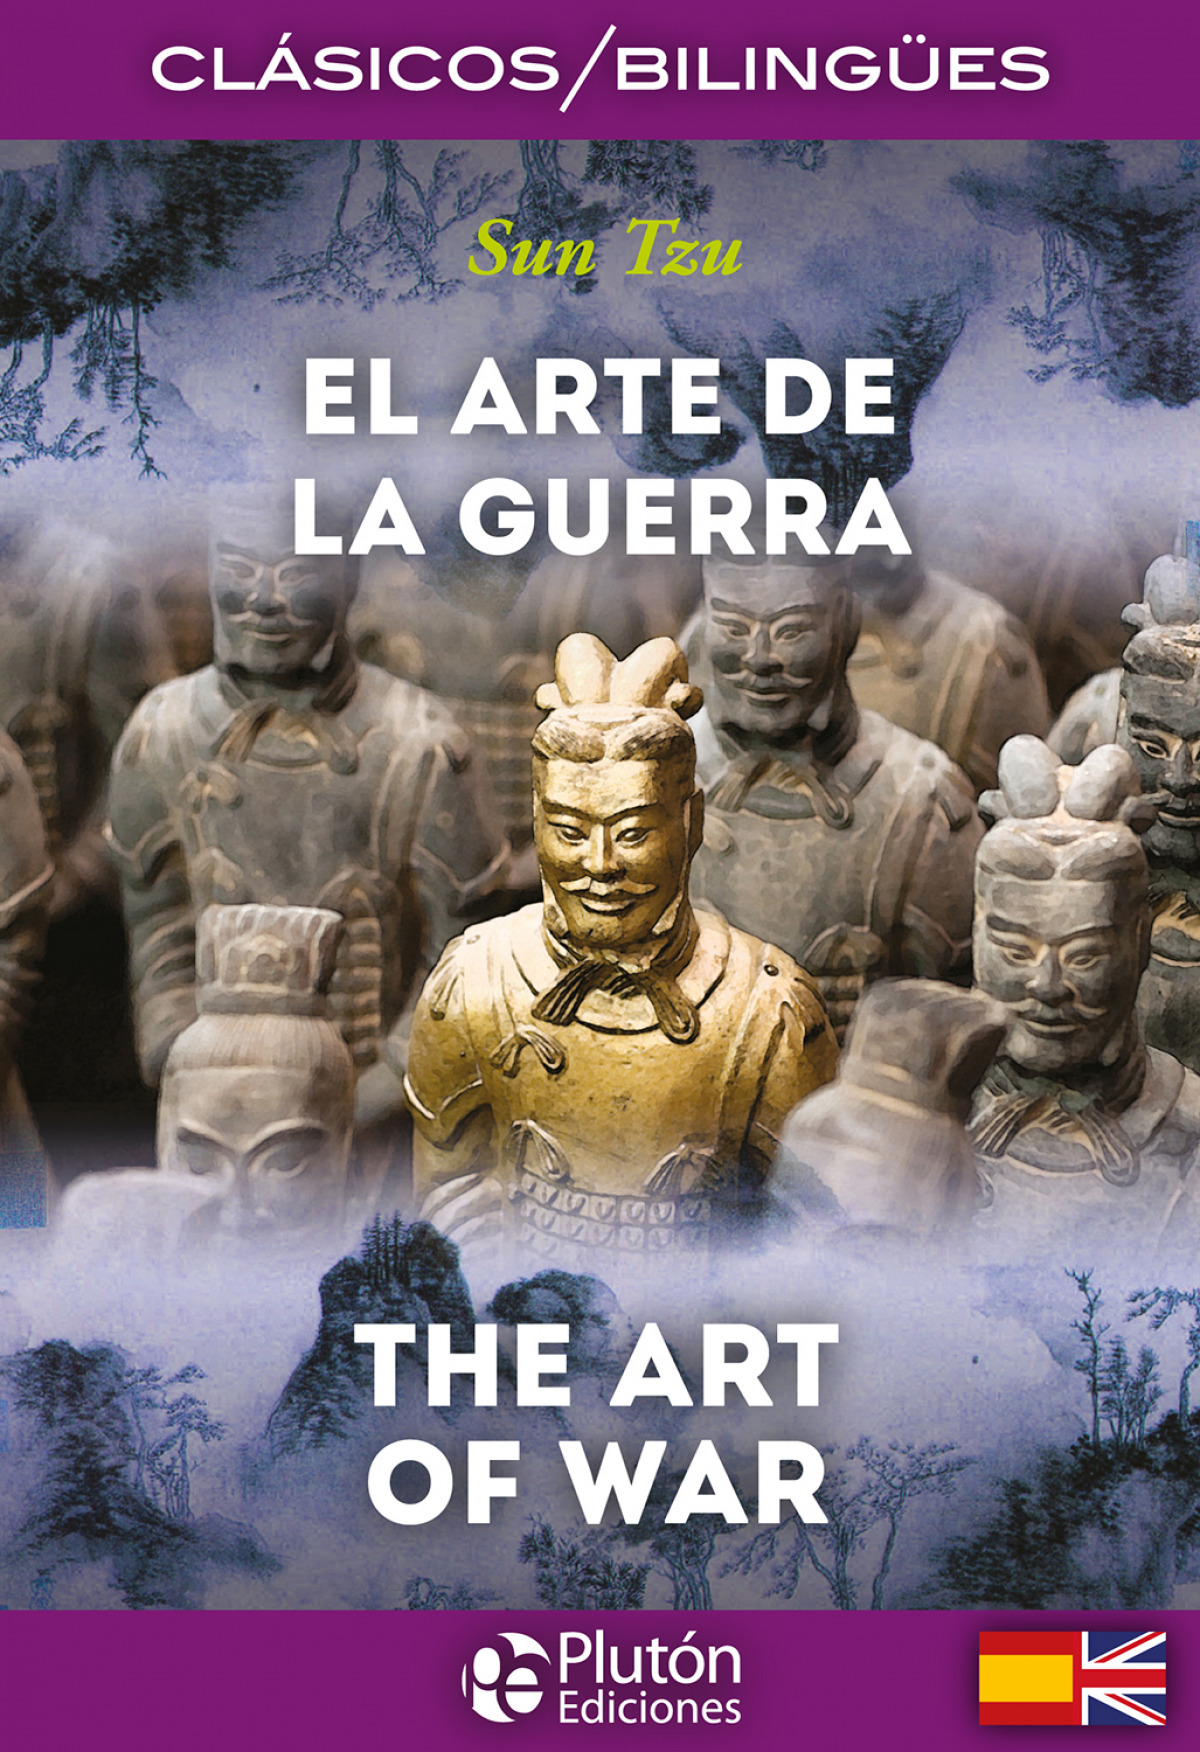 El arte de la guerra / The art of war - Sun Tzu